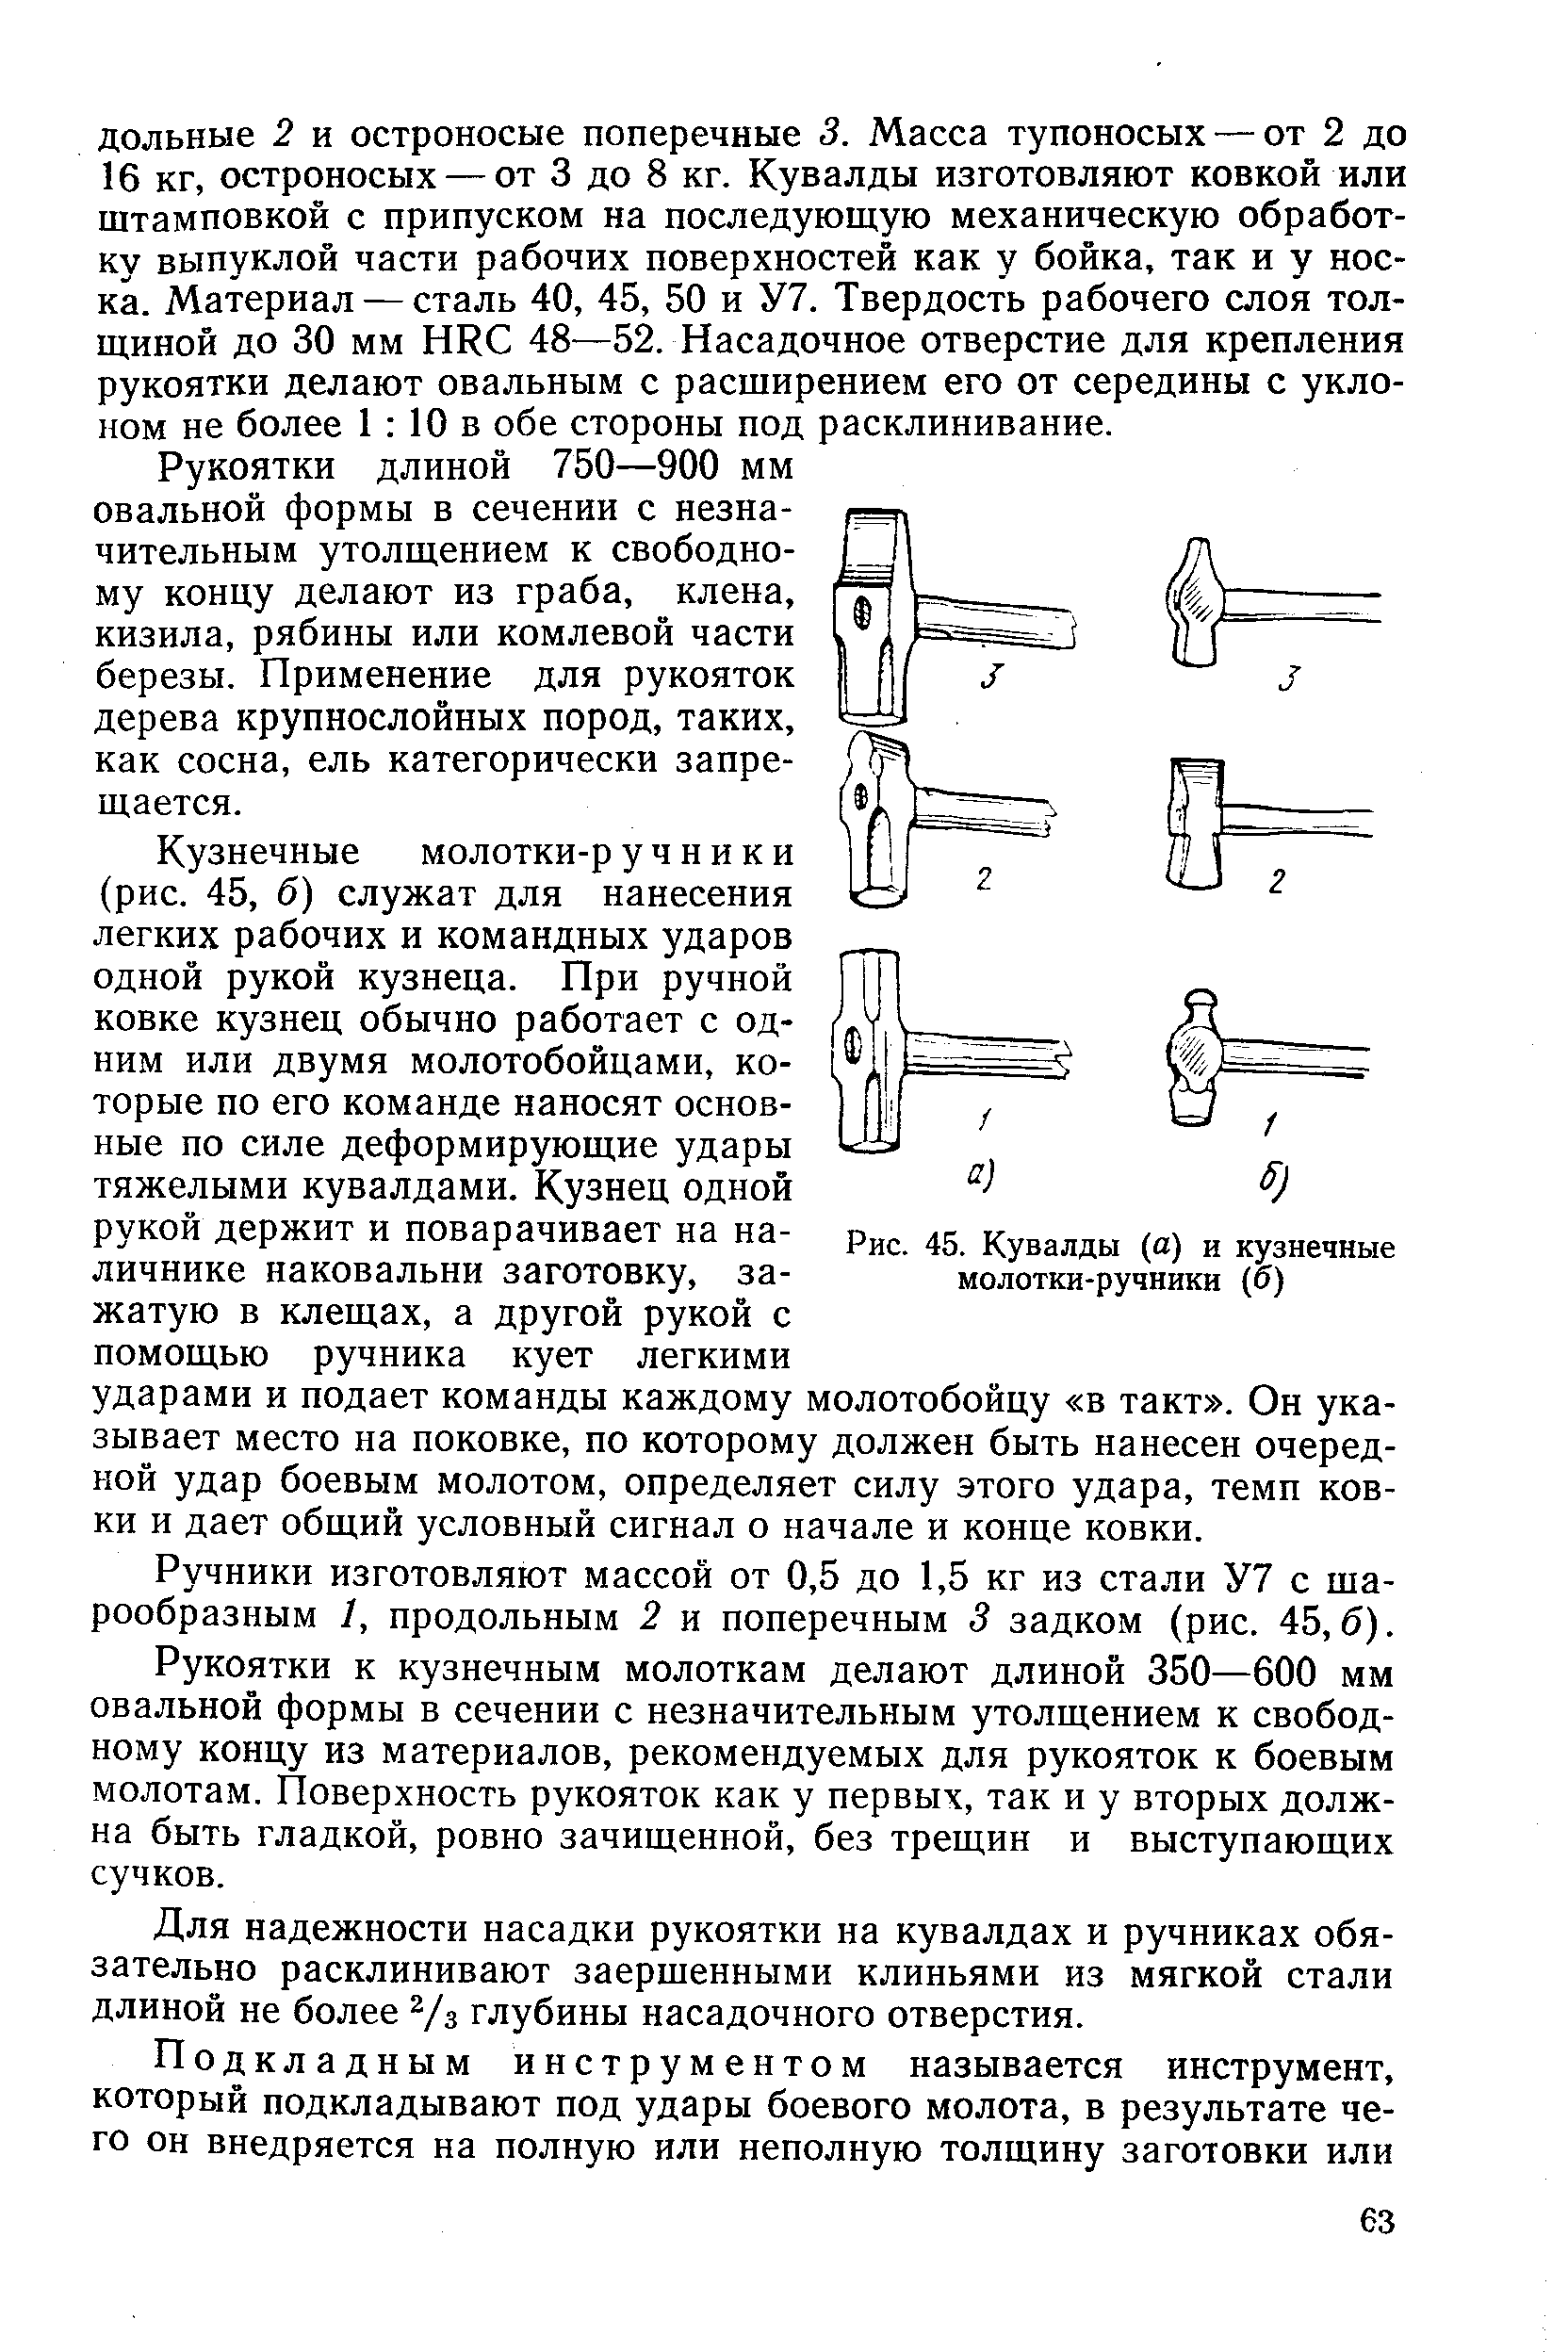 Рис. 45. Кувалды (а) и кузнечные молотки-ручники (б)
